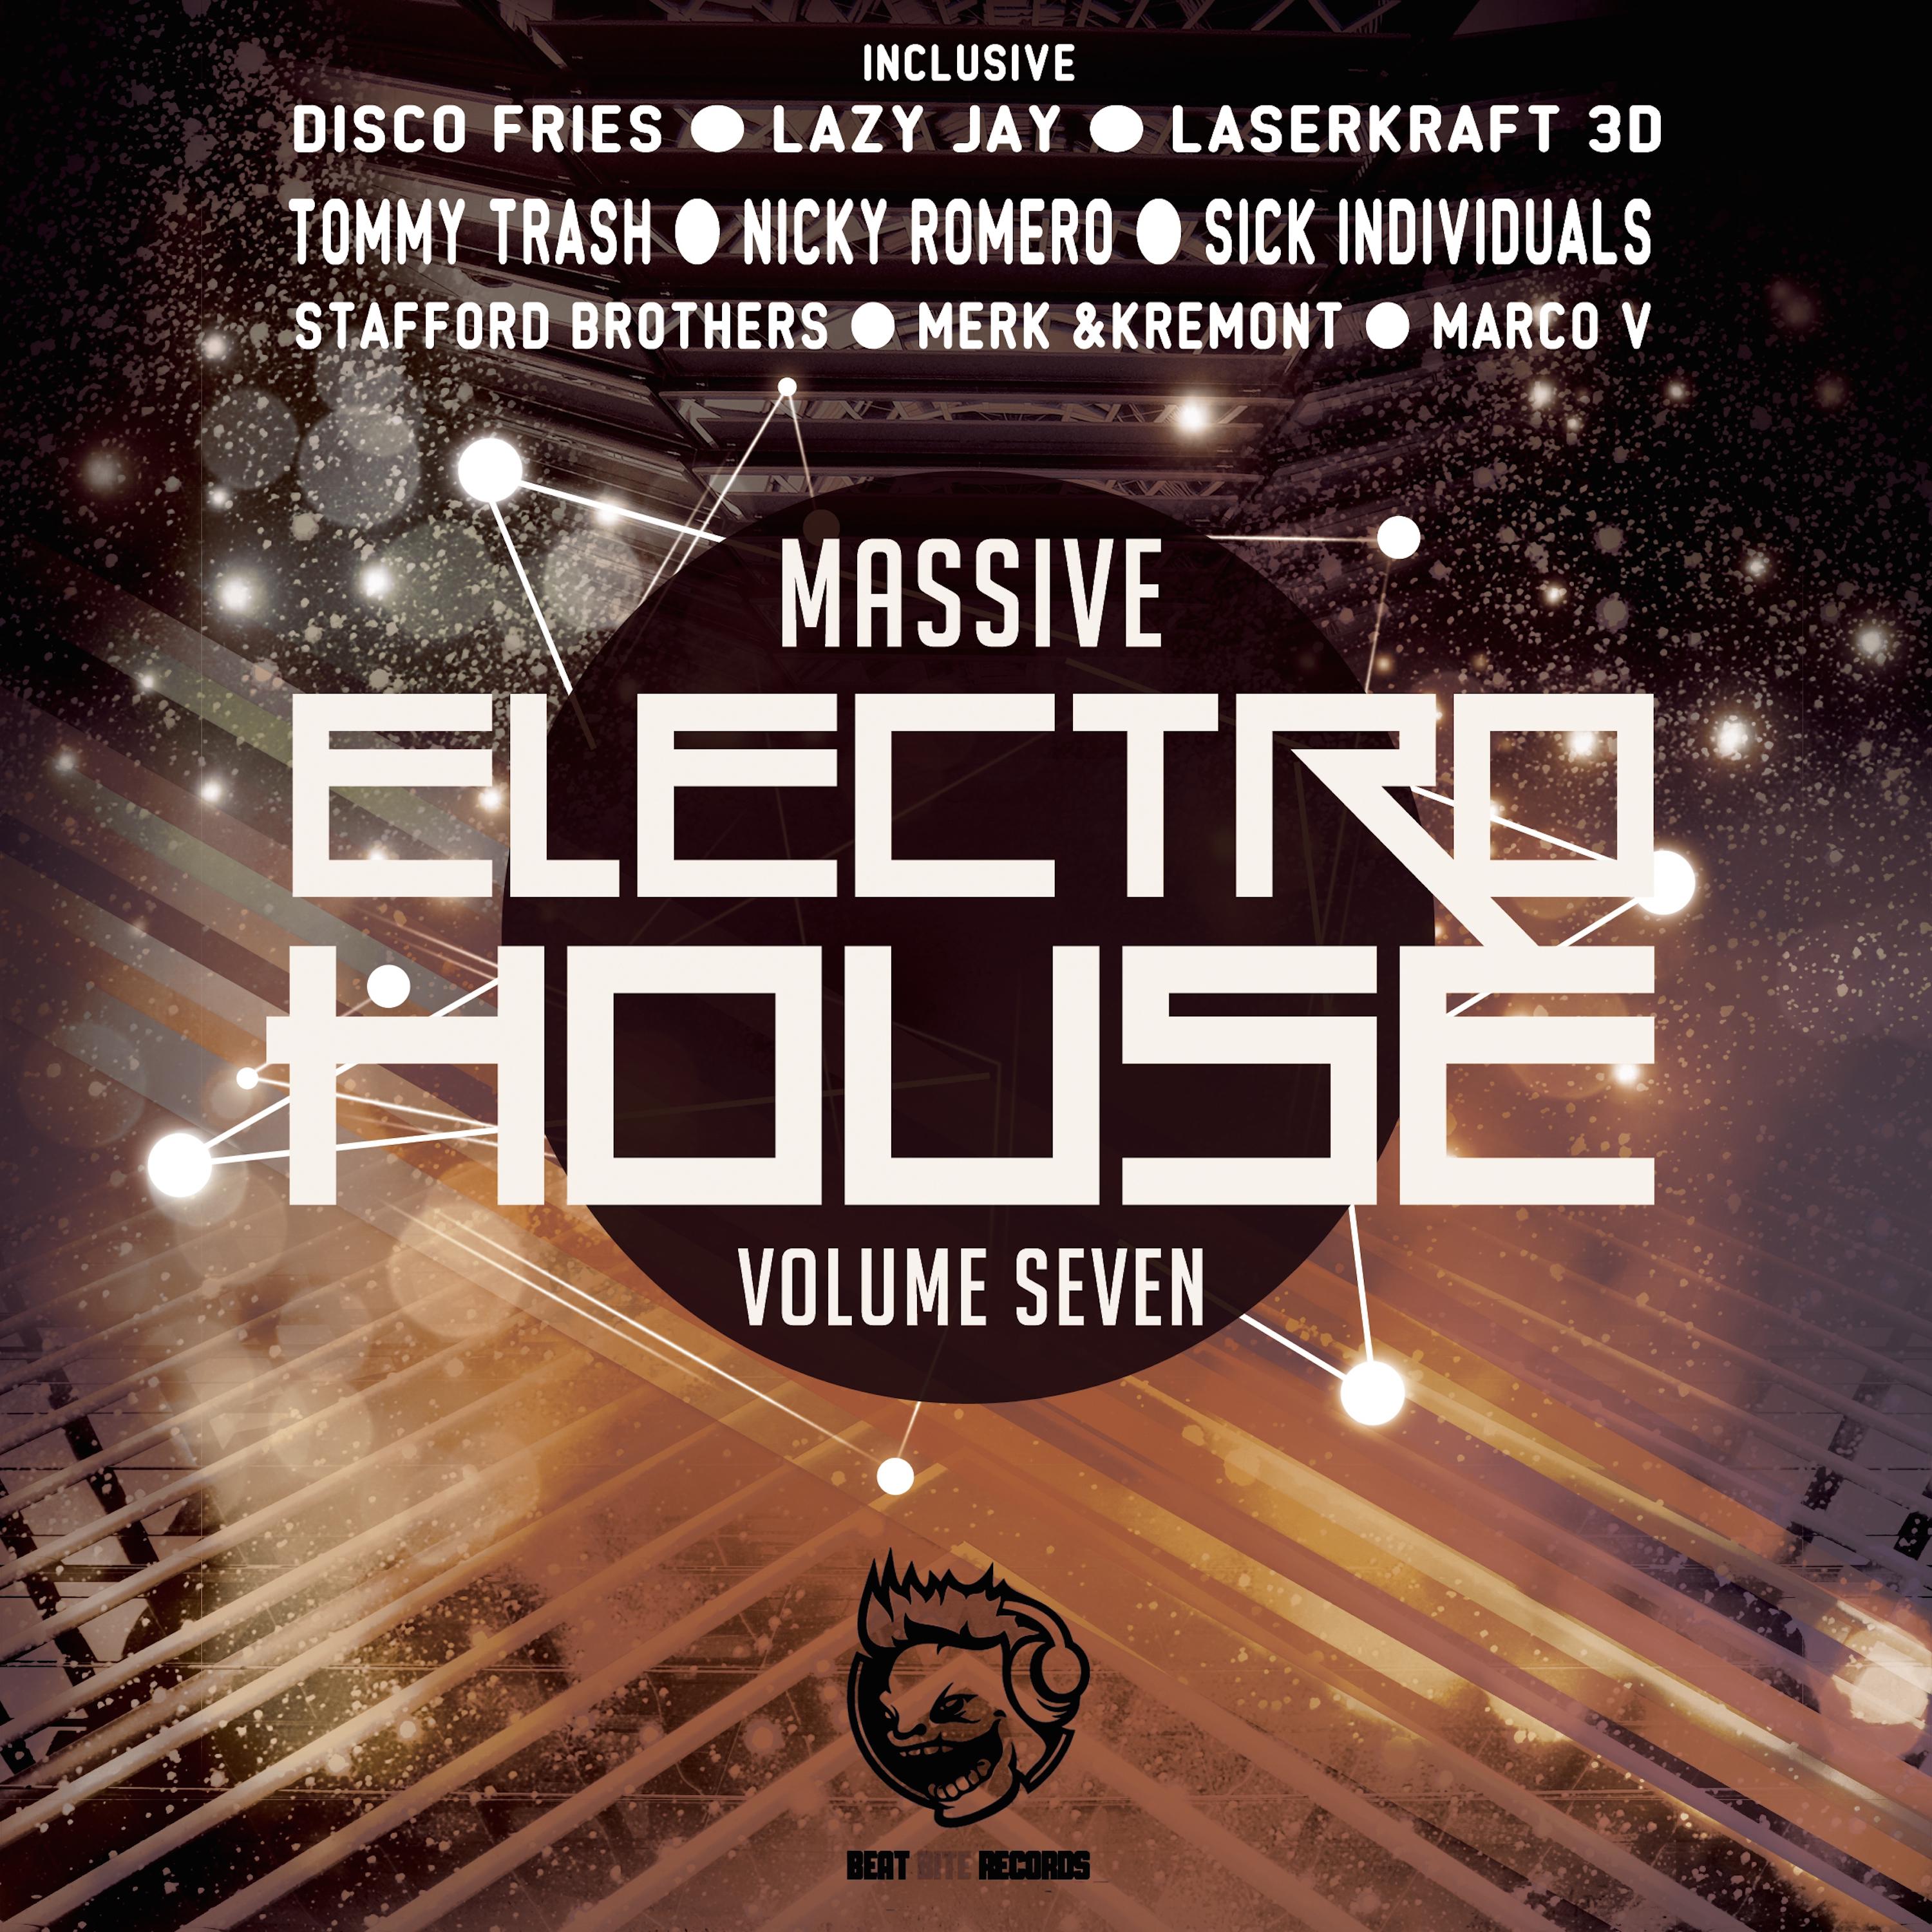 Massive Electro House, Vol. Seven